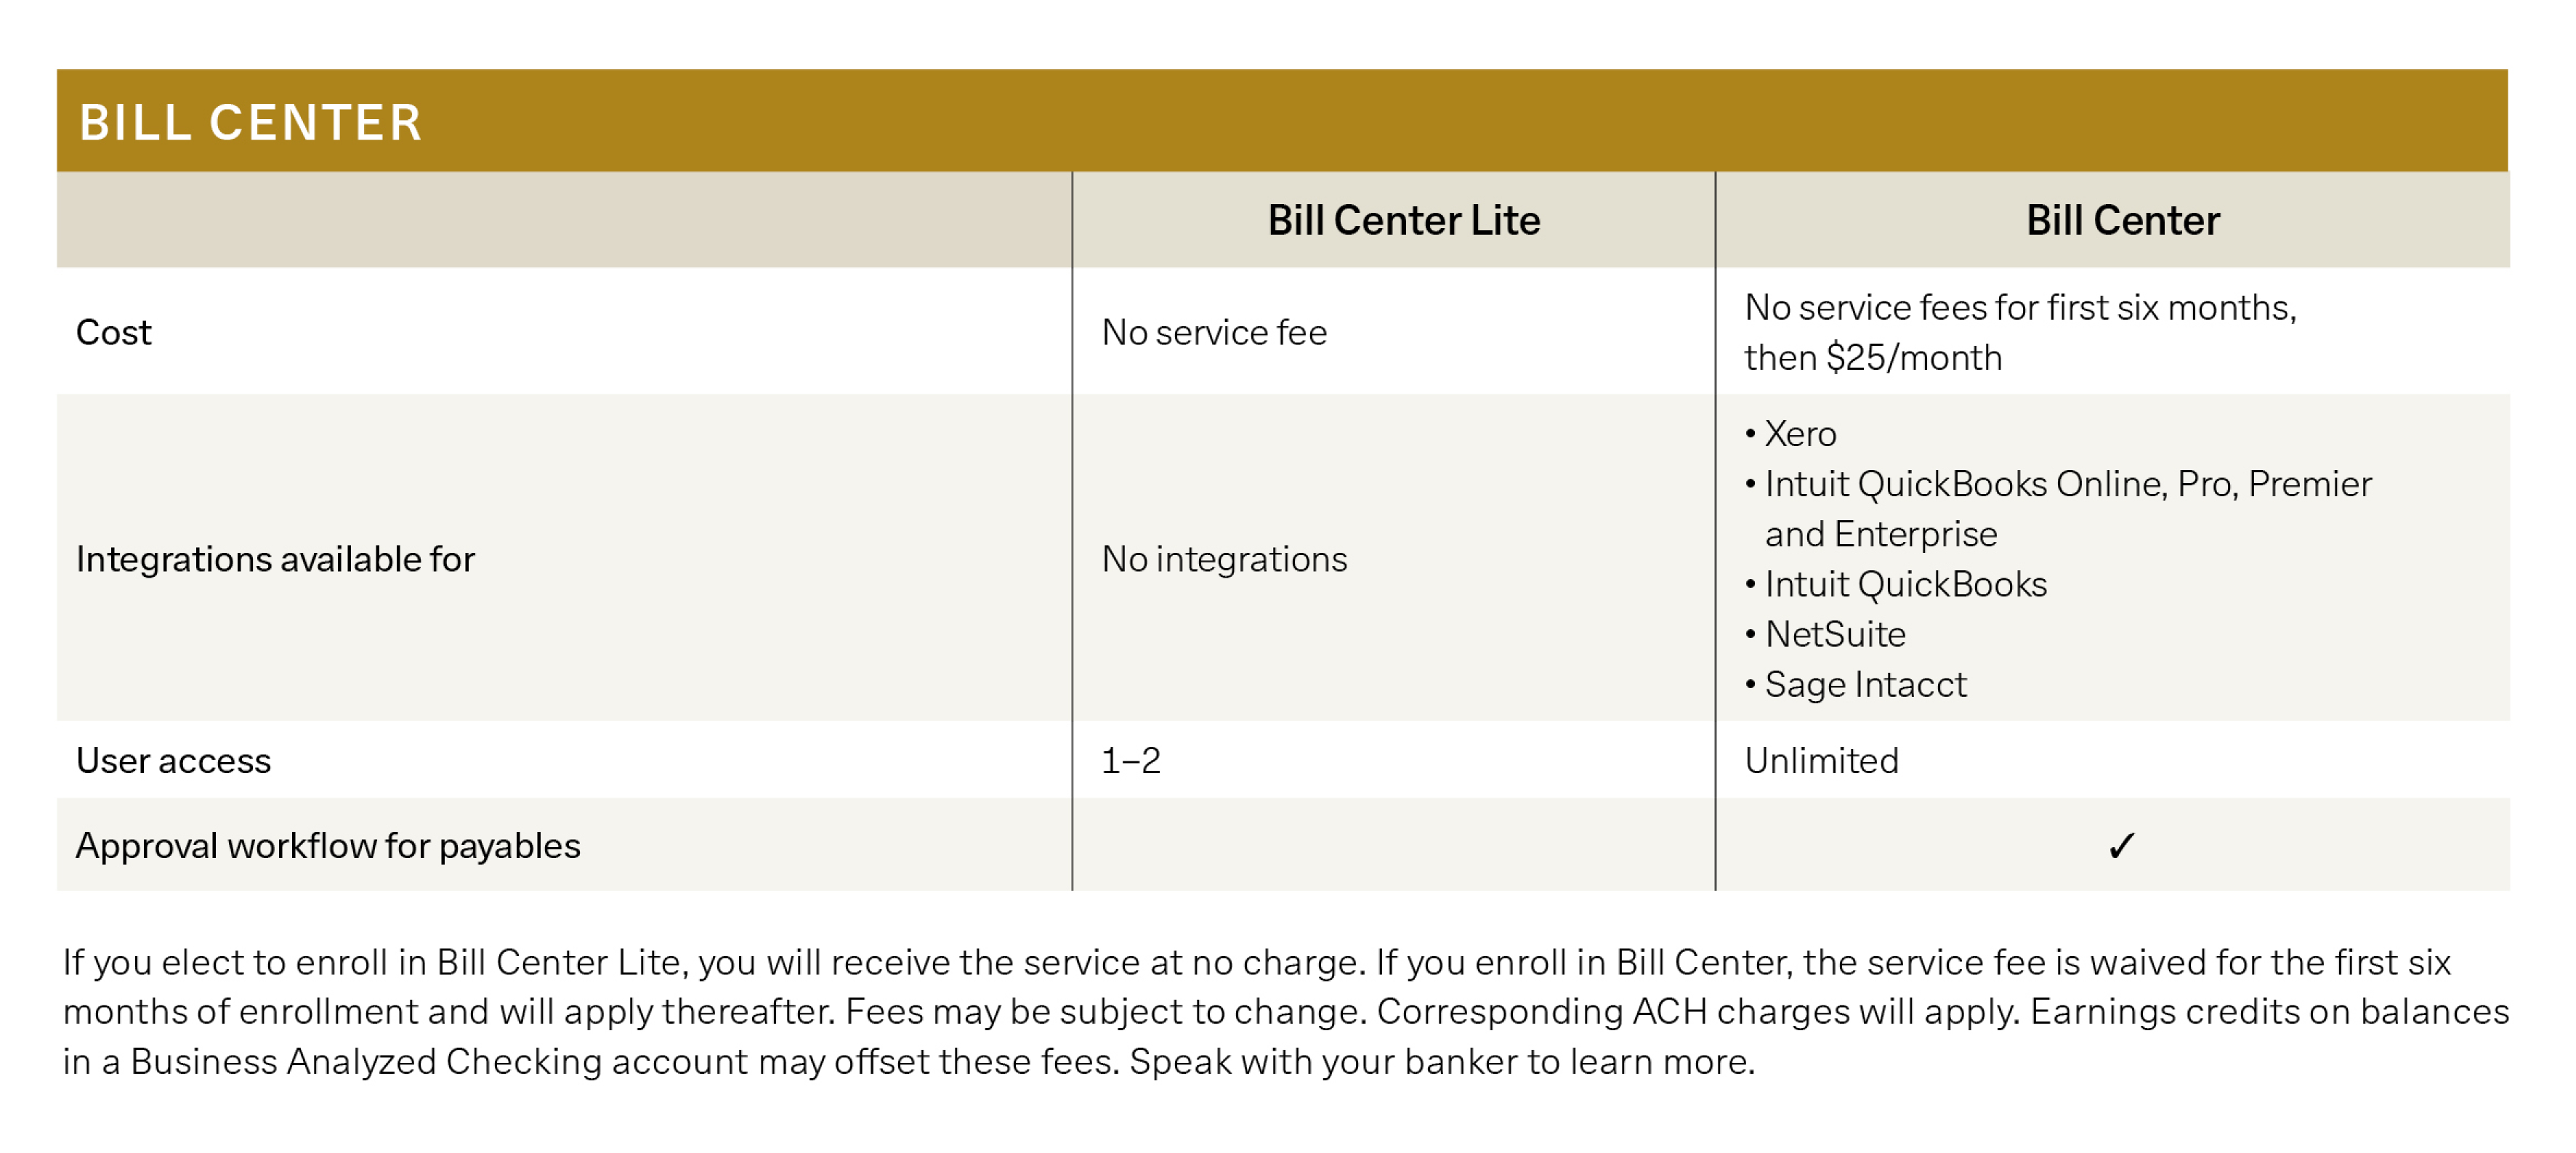 Bill Center